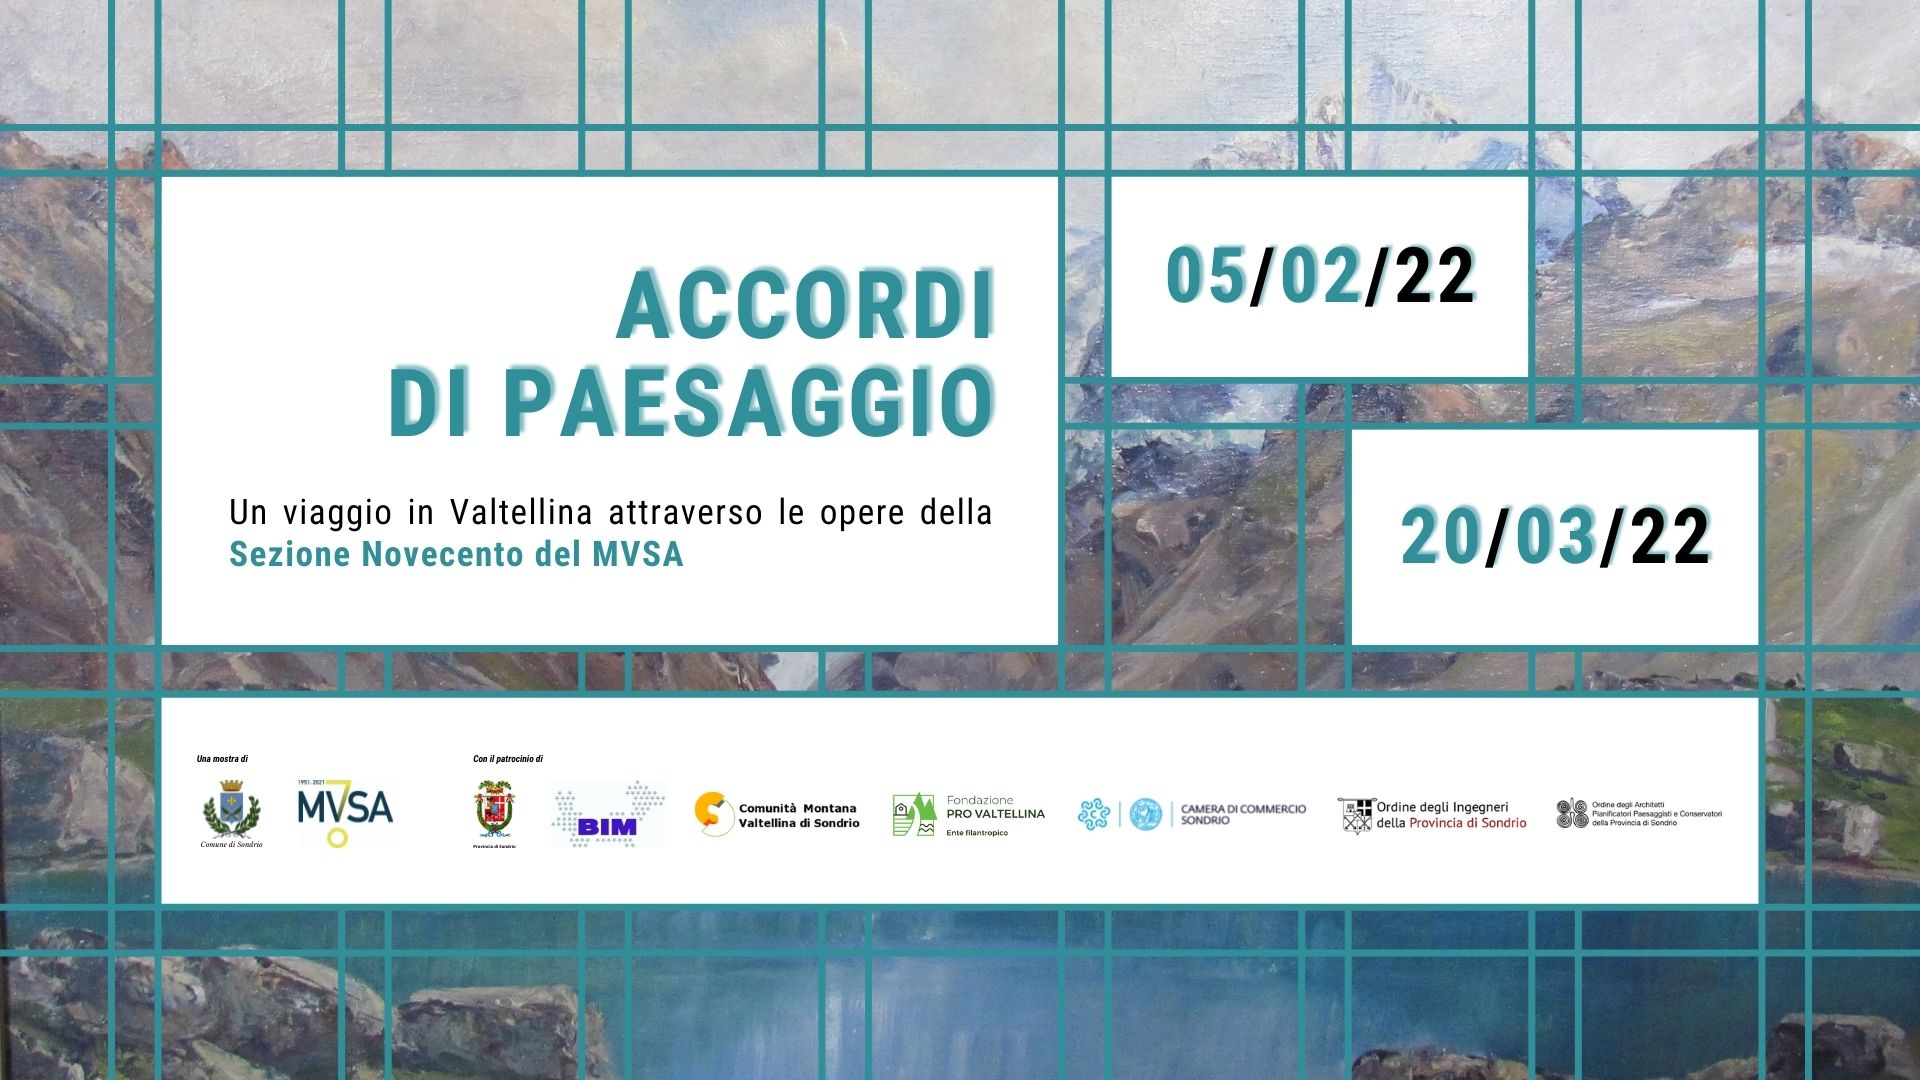 Accordi di paesaggio. Un viaggio in Valtellina attraverso le opere della Sezione Novecento del MVSA.